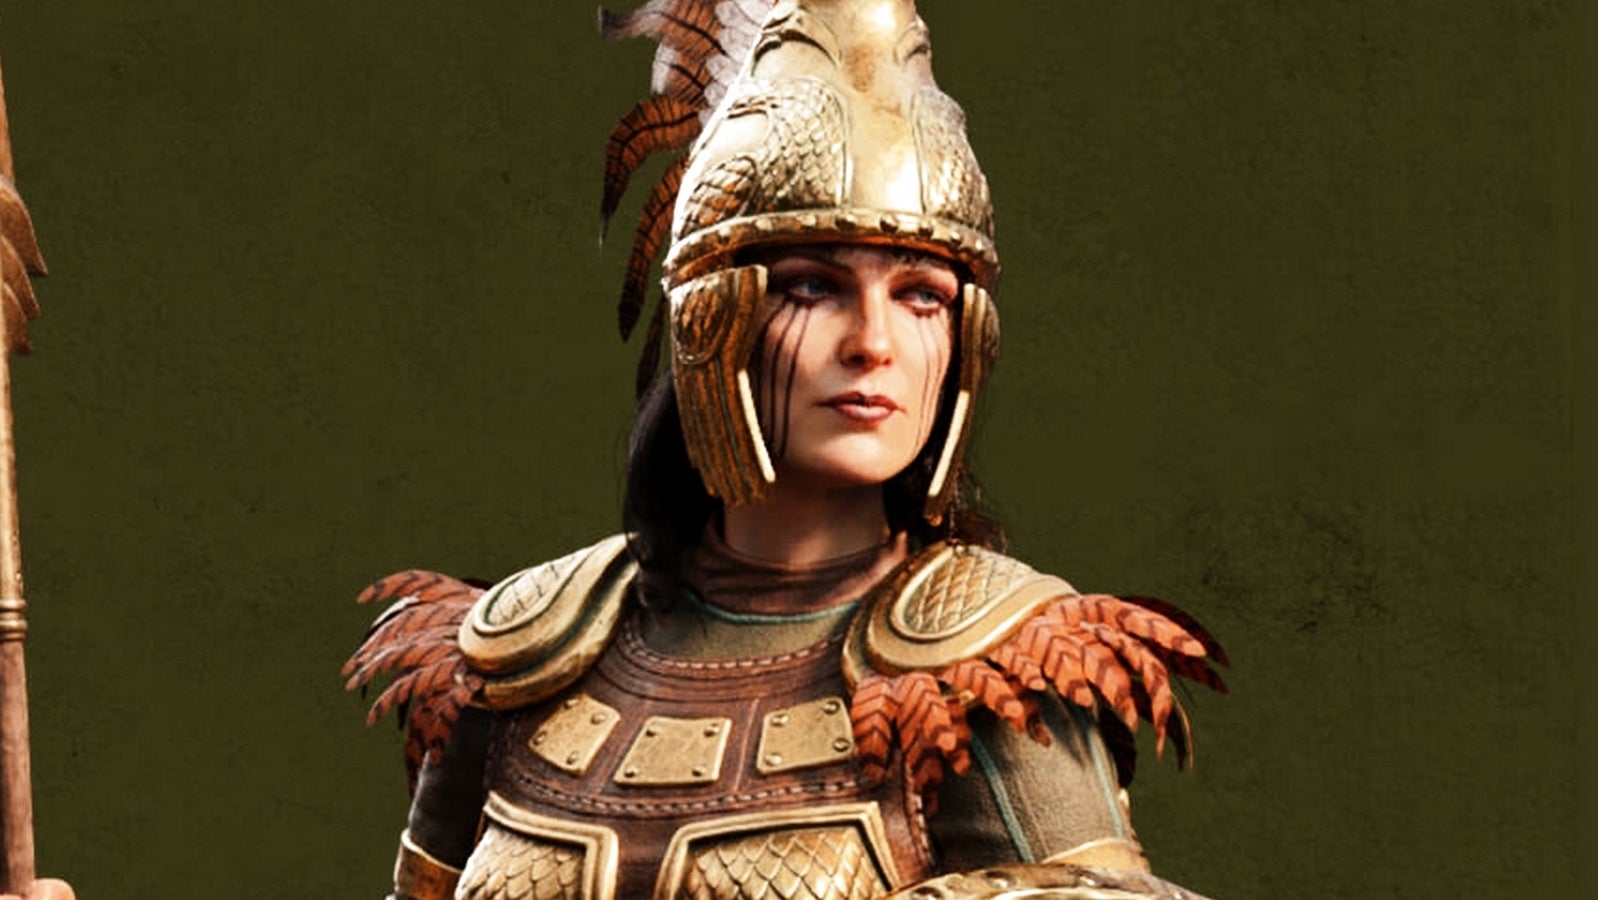 Bilder zu Amazons-DLC für Total War Saga: Troy für kurze Zeit kostenlos, Handelsversion angekündigt